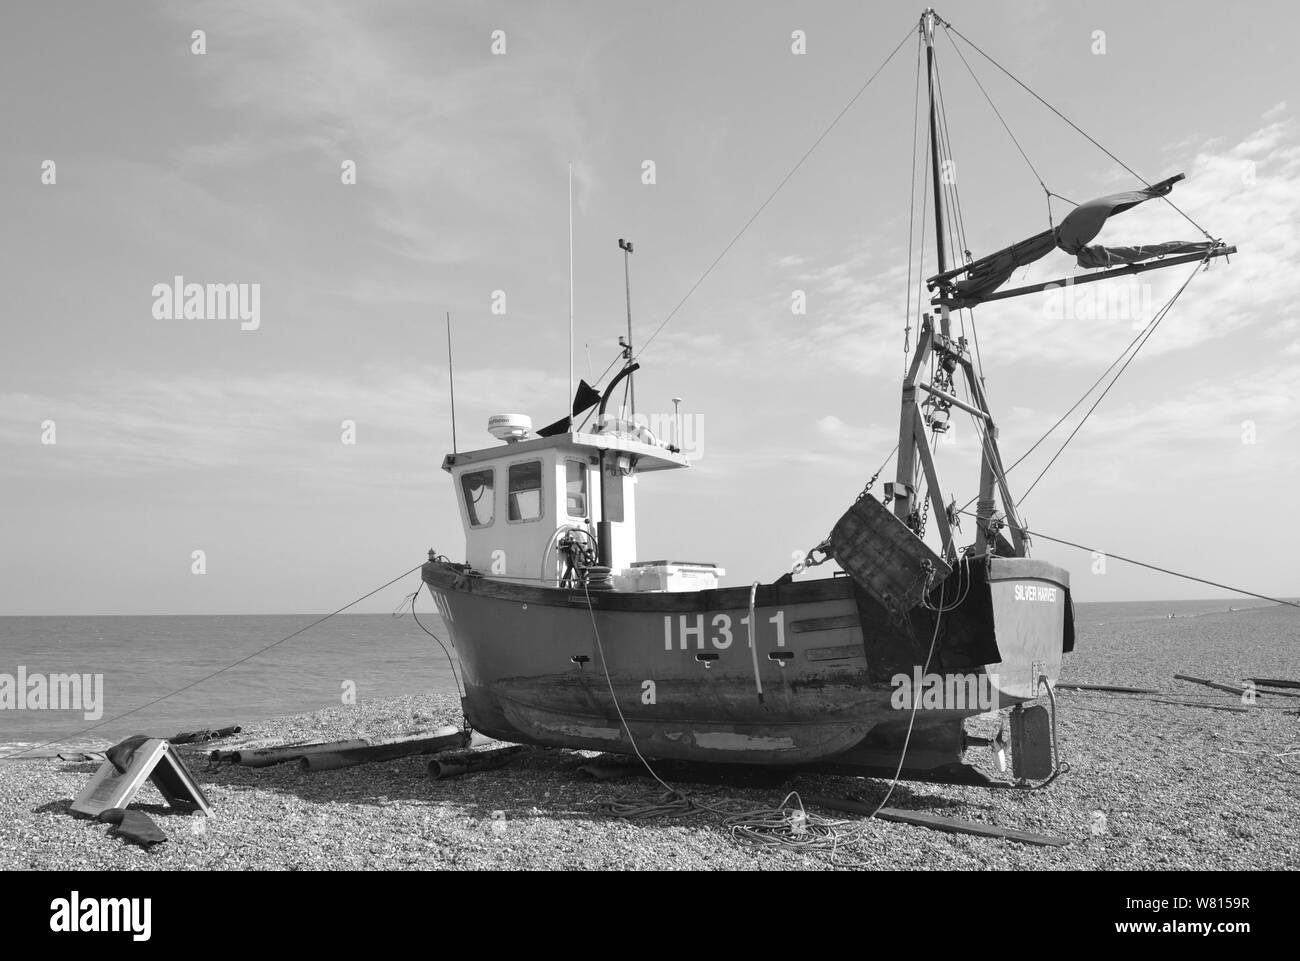 Photographie en noir et blanc d'un bateau de pêche sur la plage d'Aldeburgh, dans le Suffolk, Royaume-Uni Banque D'Images